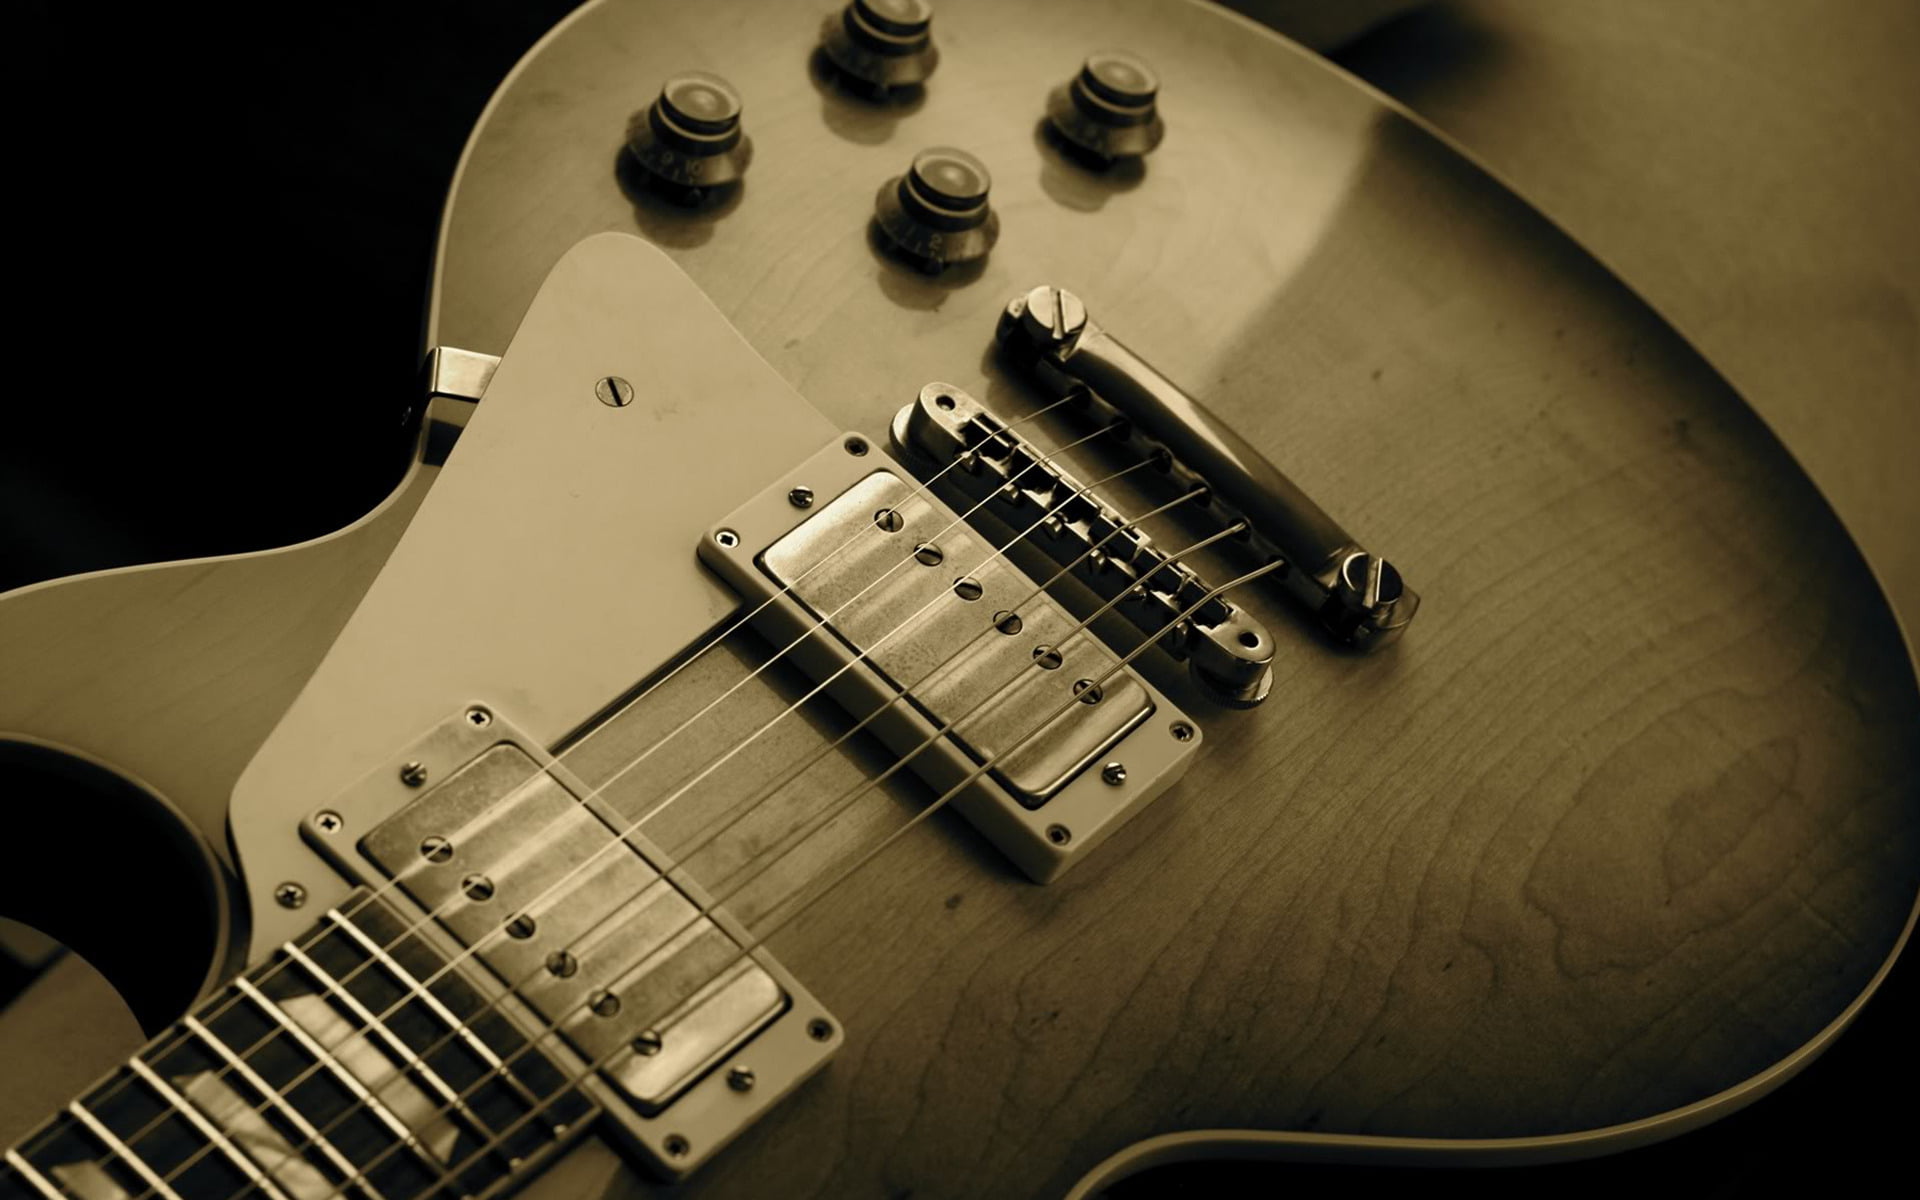 Les Paul Guitar, gray electric guitar, Music, musical instrument